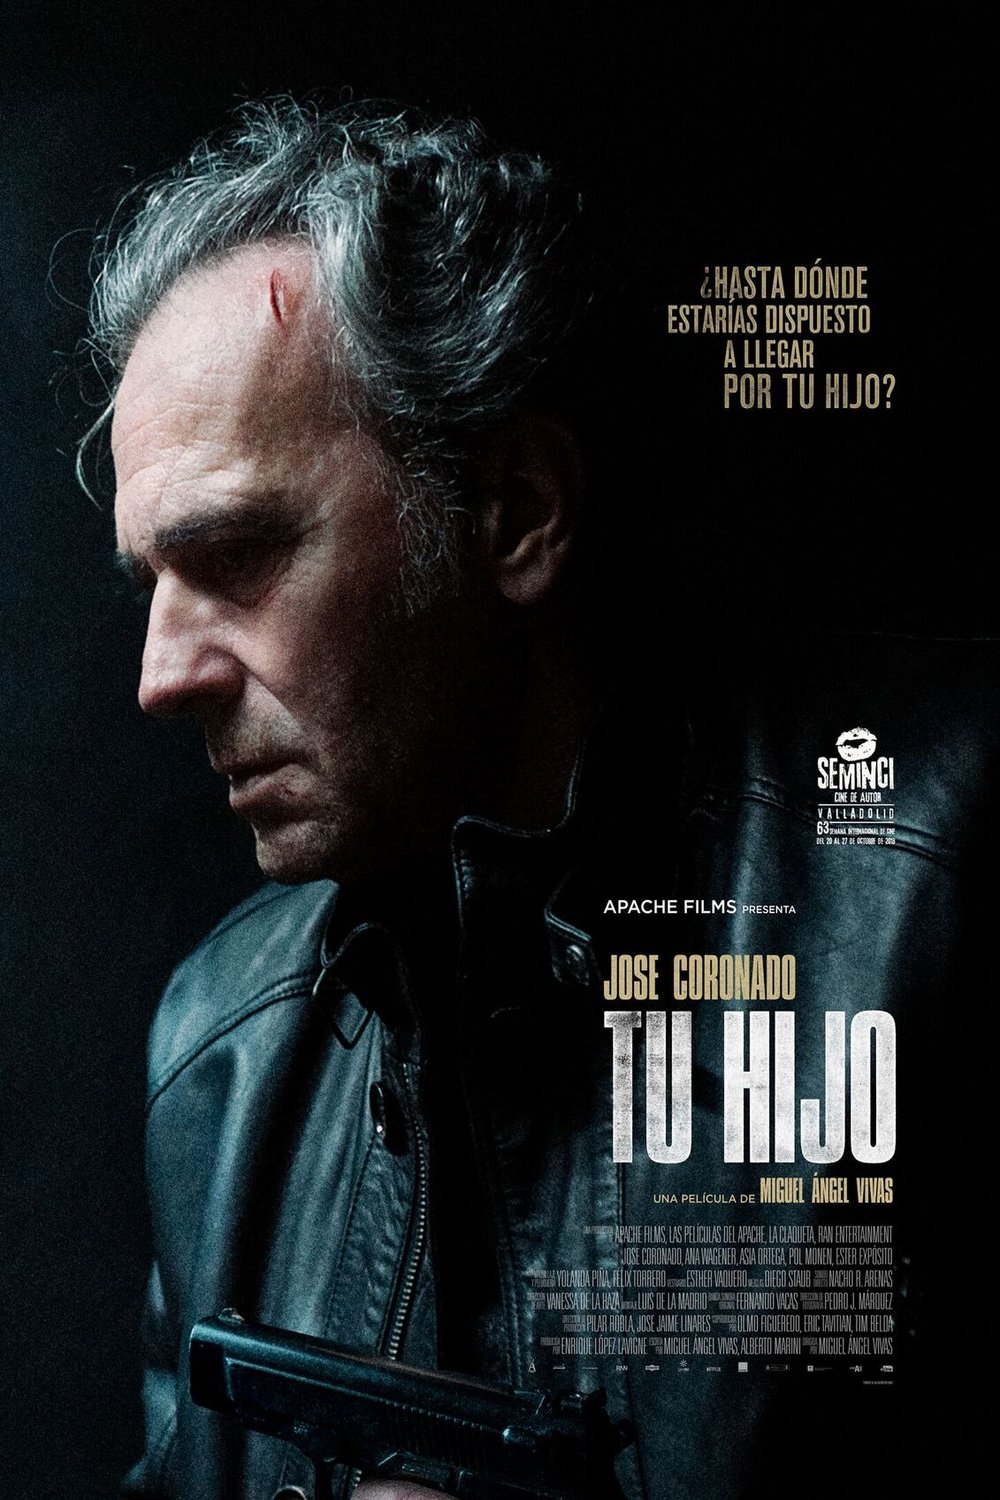 Spanish poster of the movie Tu hijo